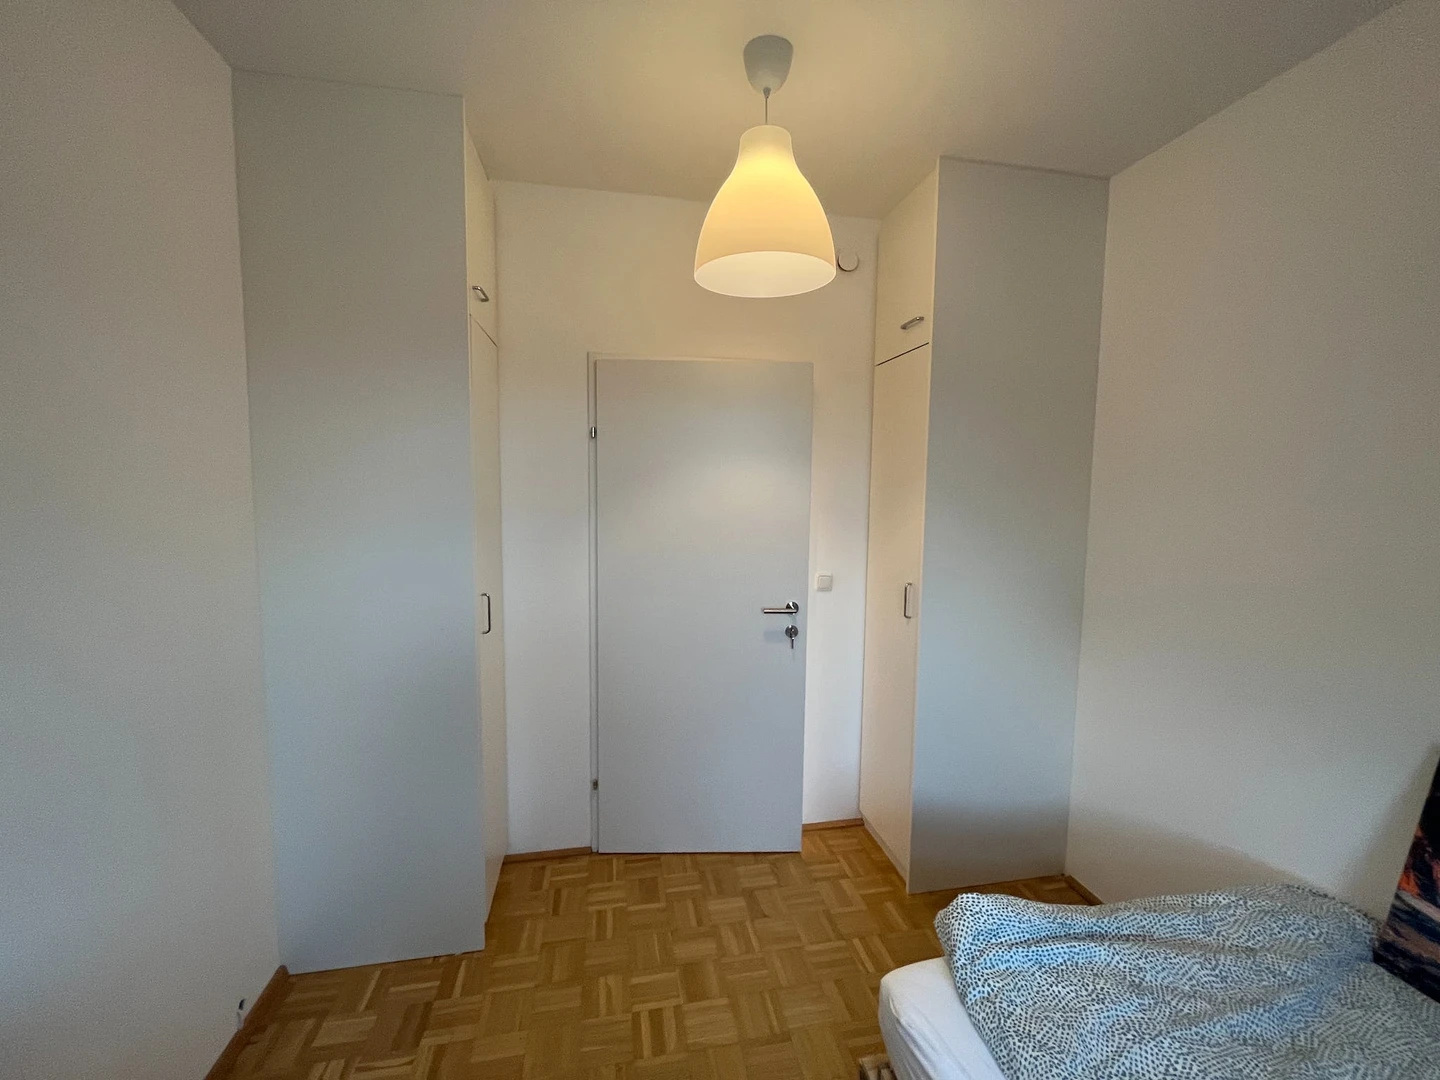 Pokój do wynajęcia z podwójnym łóżkiem w Linz